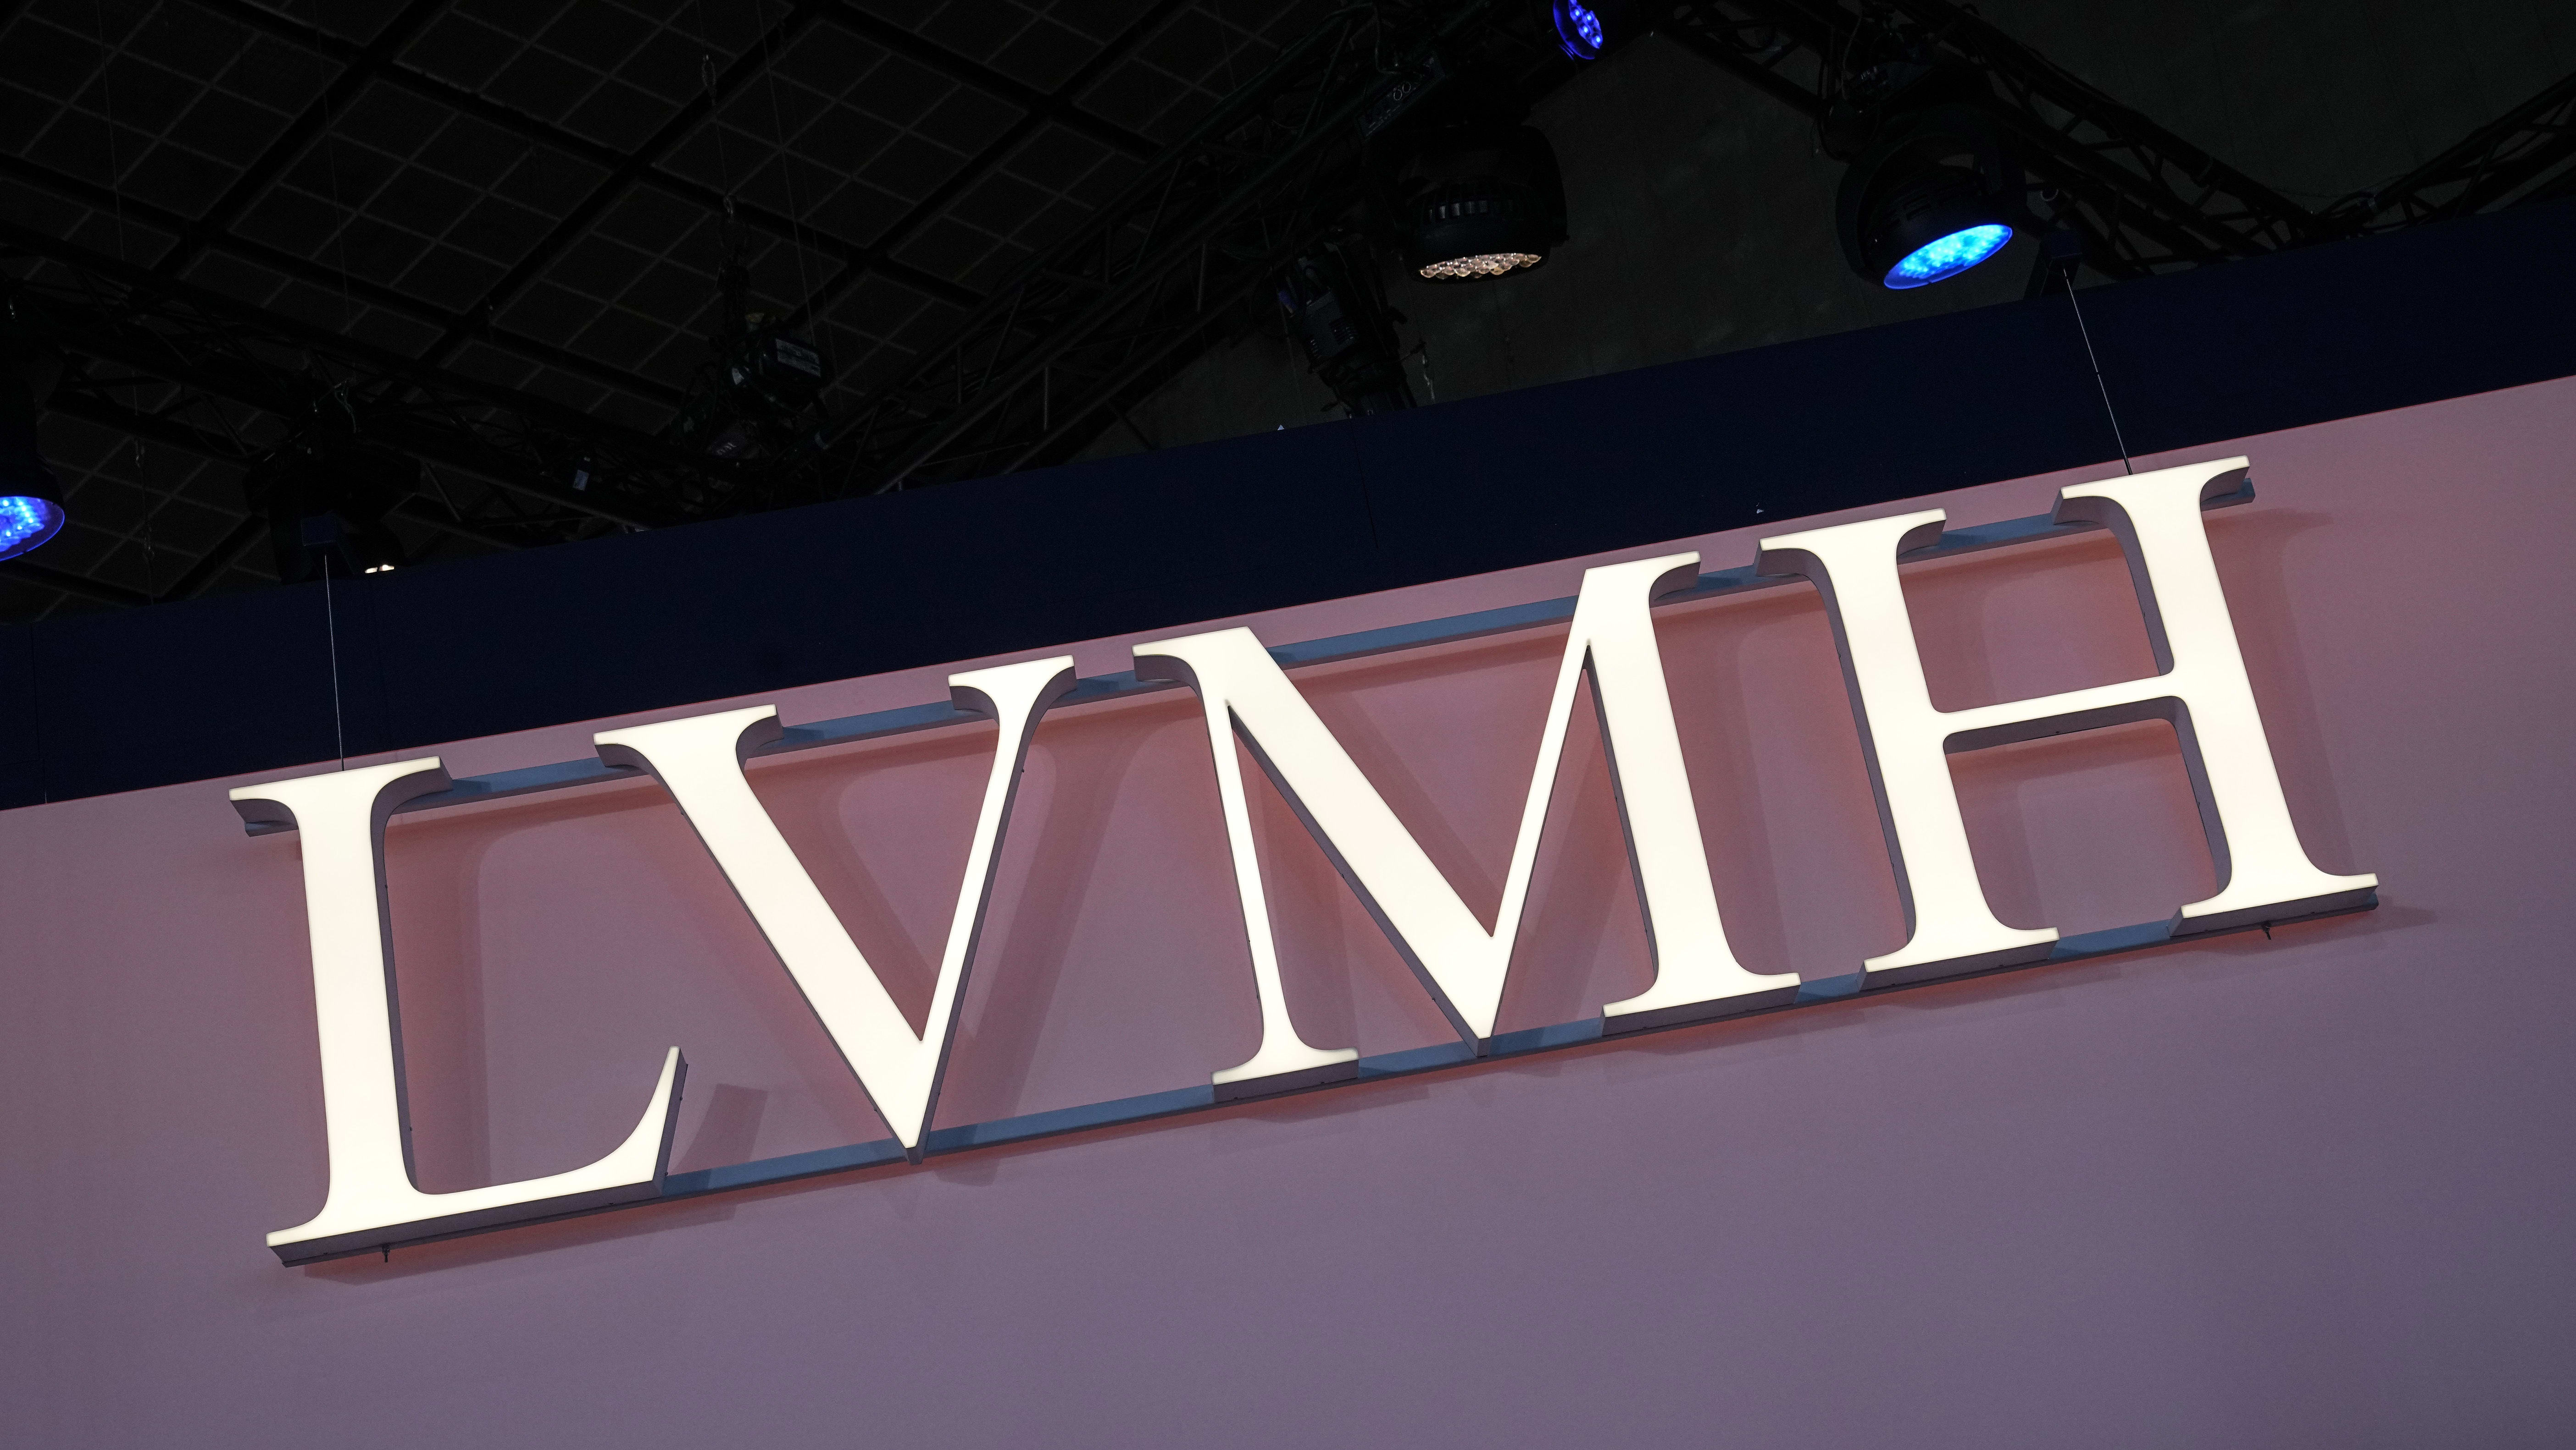 LVMH revenue growth slows down in Q3